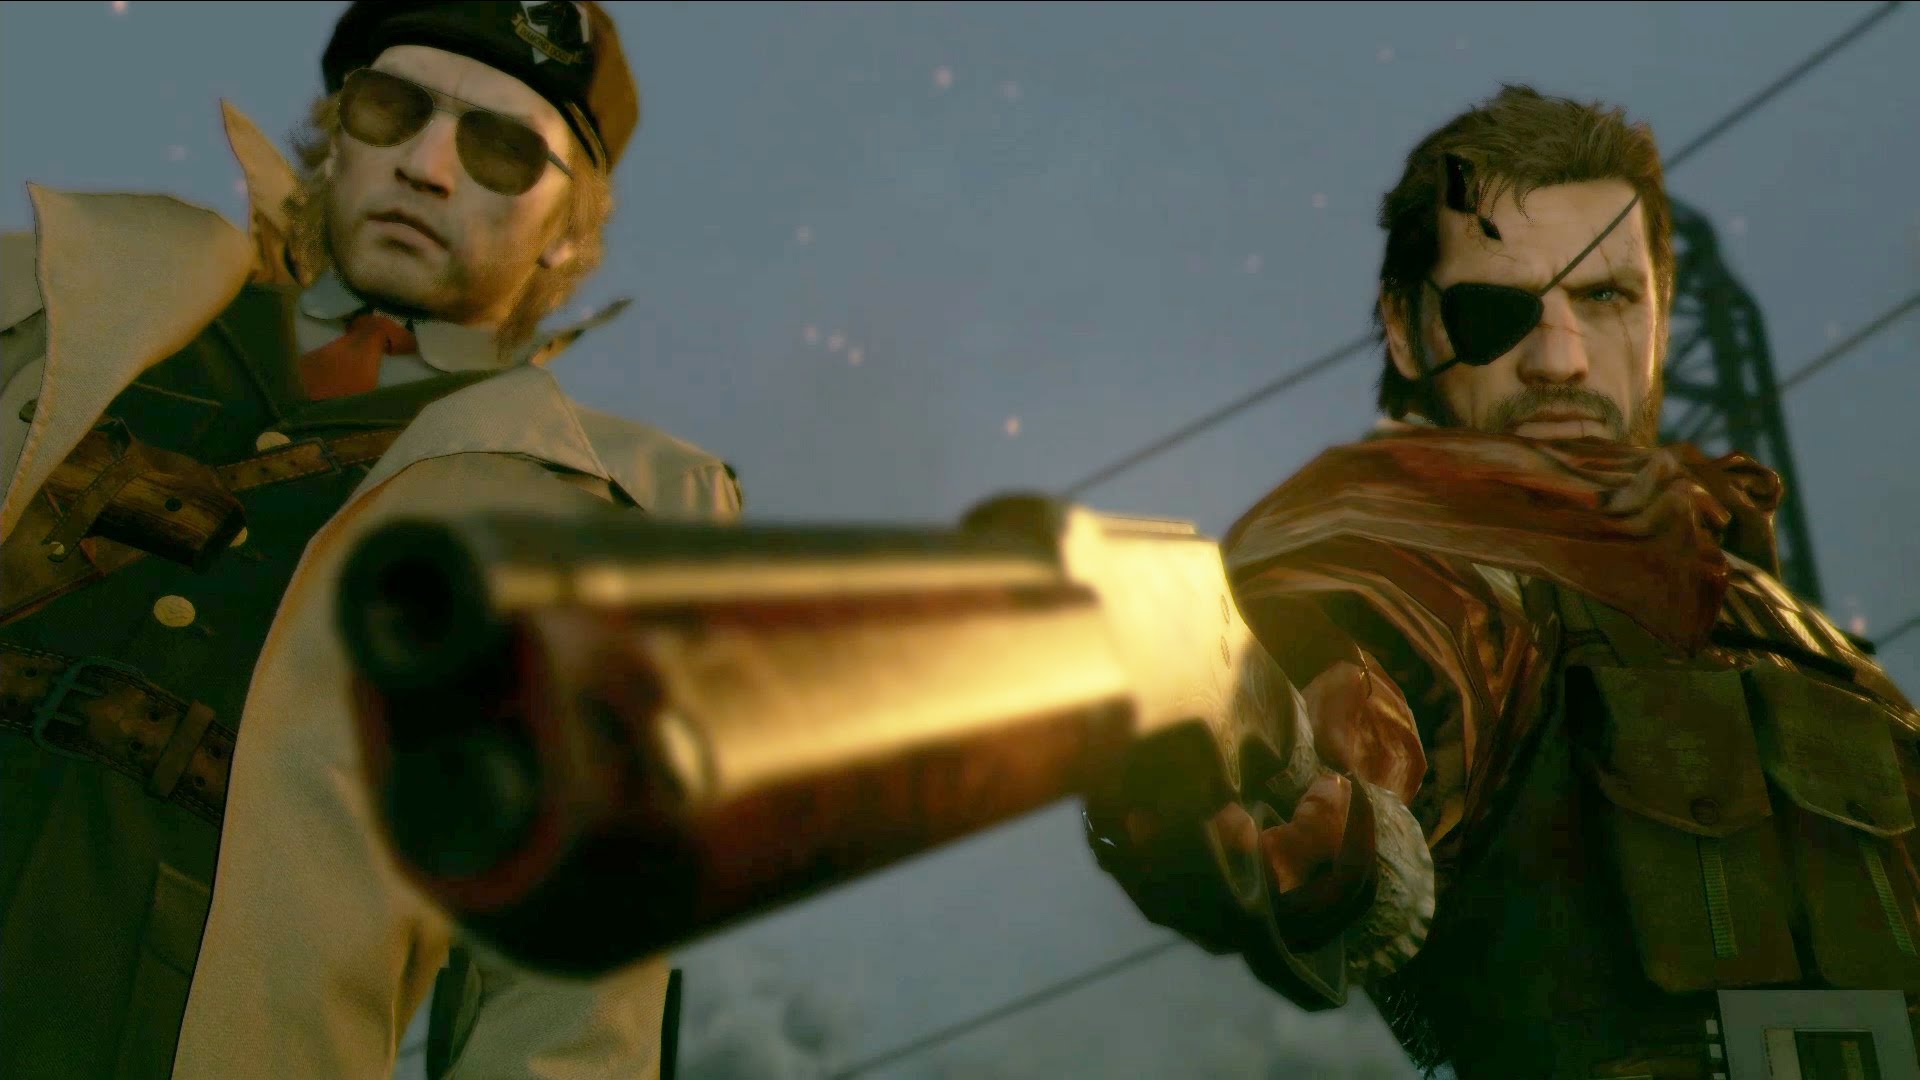 Metal Gear Solid 5 GamesCom 2015 trailer